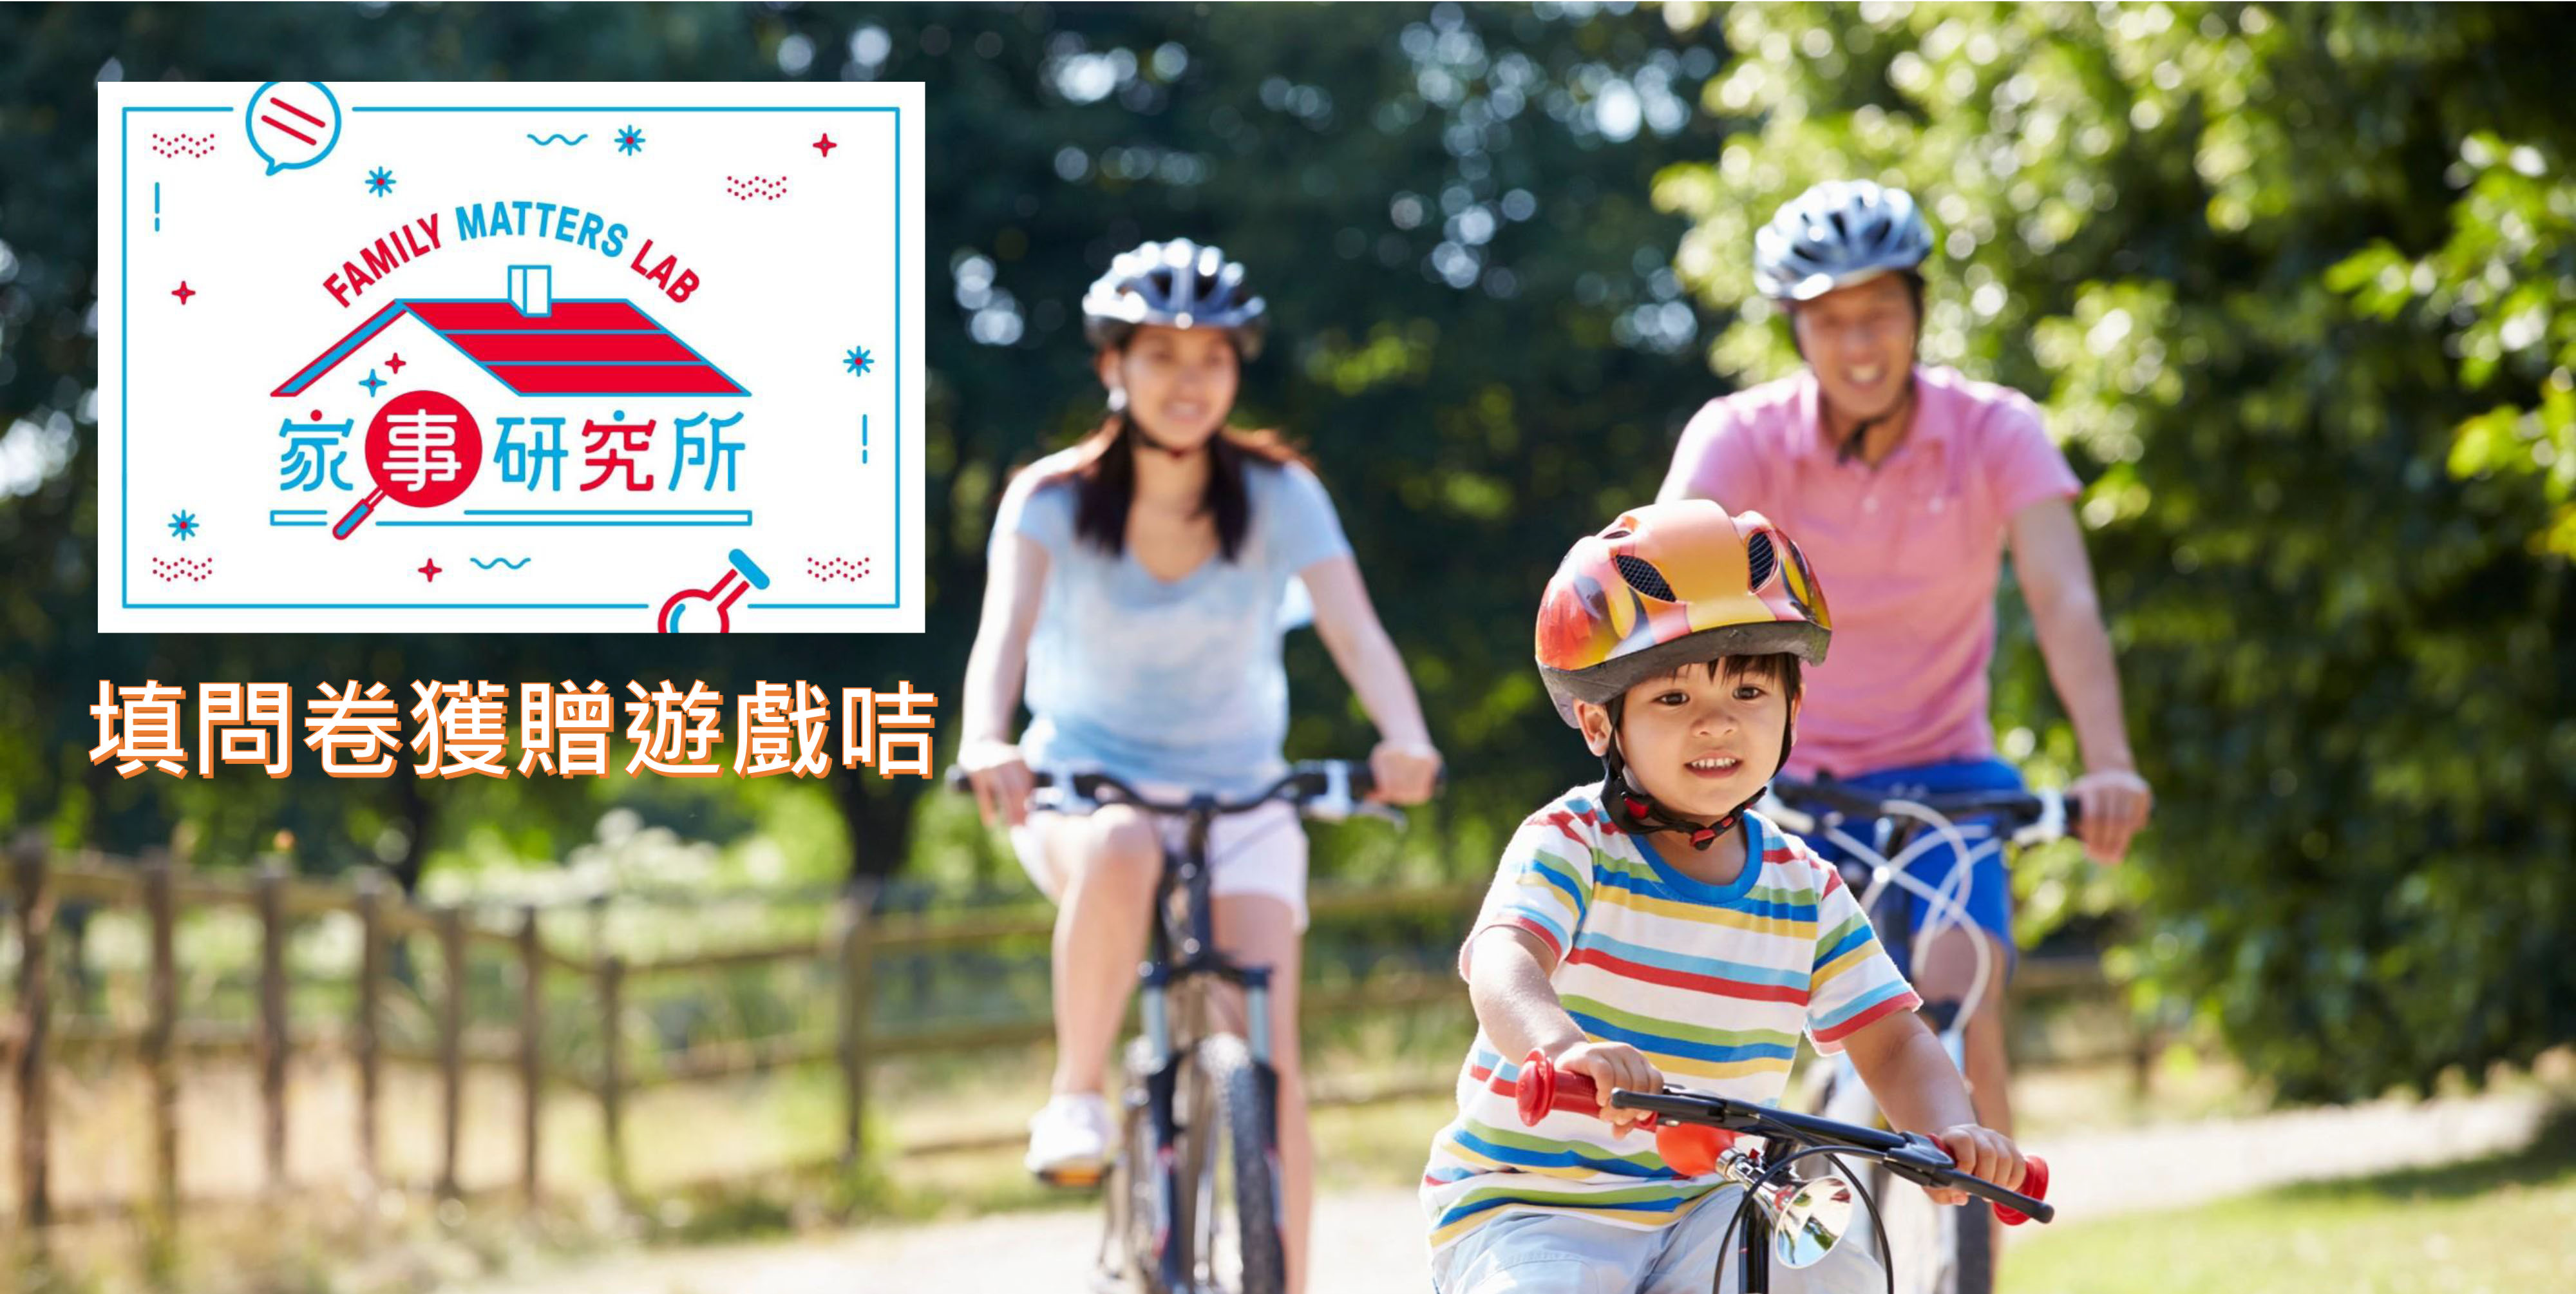 「香港家庭幸福指數」網上問卷